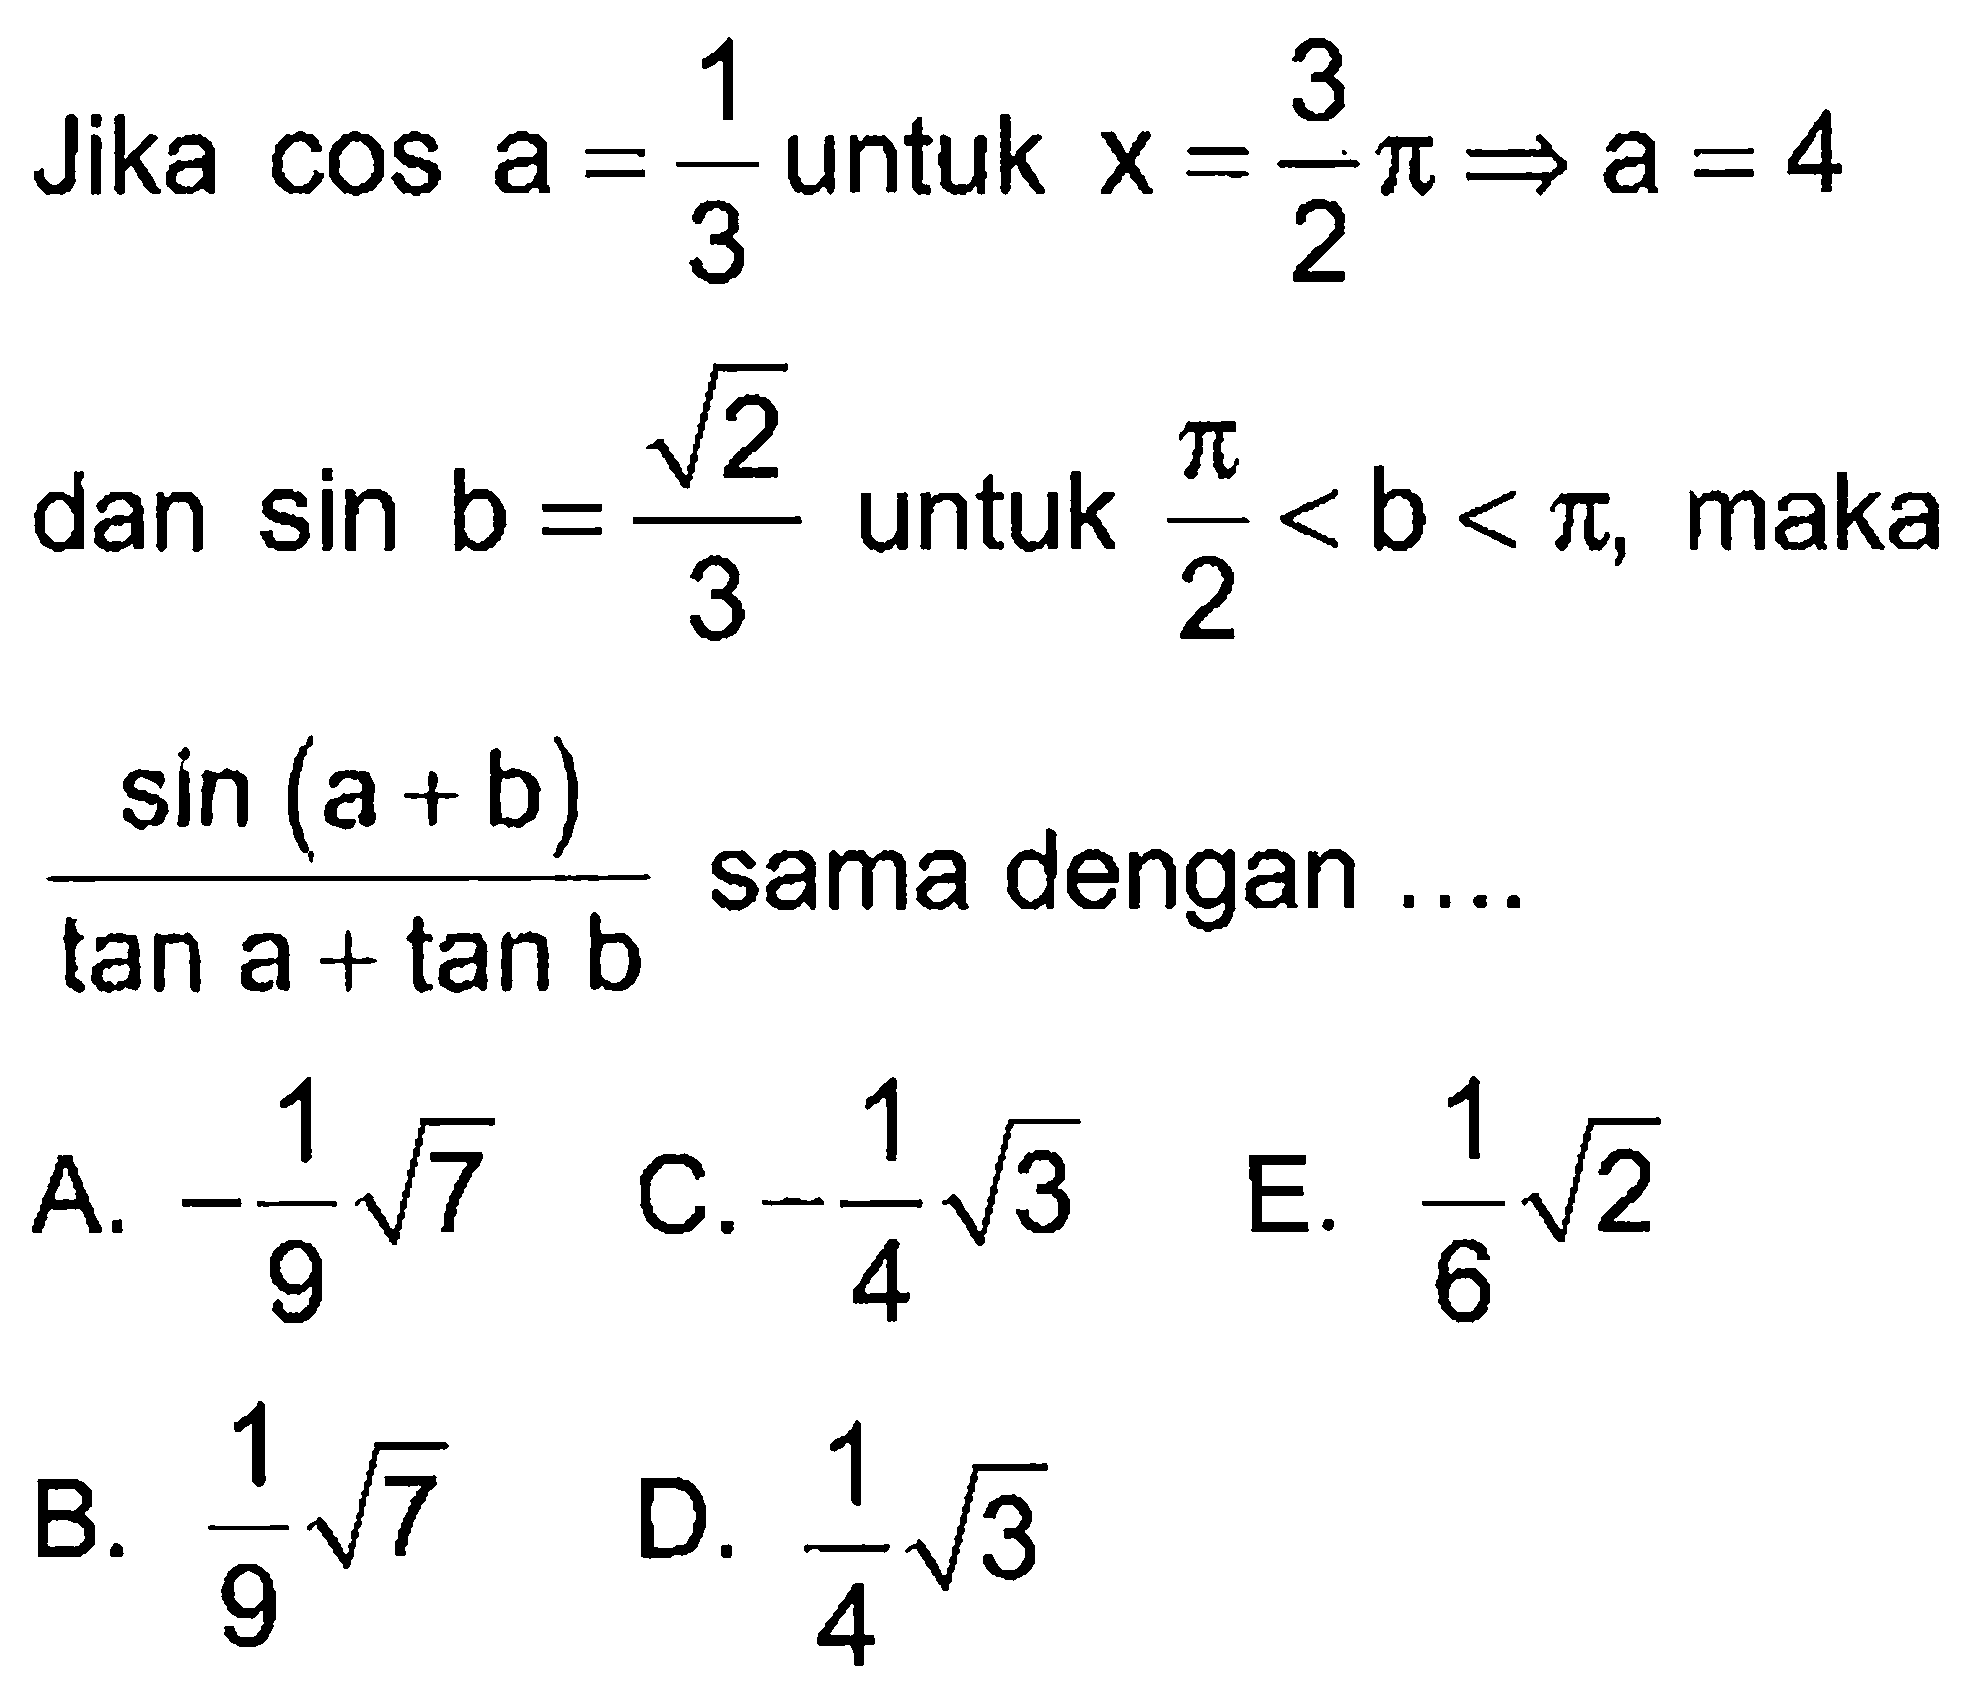 Jika cos a=1/3 untuk x=3/2p -> a=4 dan sin b=akar(2)/3 untuk pi/2<b<pi, maka (sin(a+b))/(tana+tanb) sama dengan ...